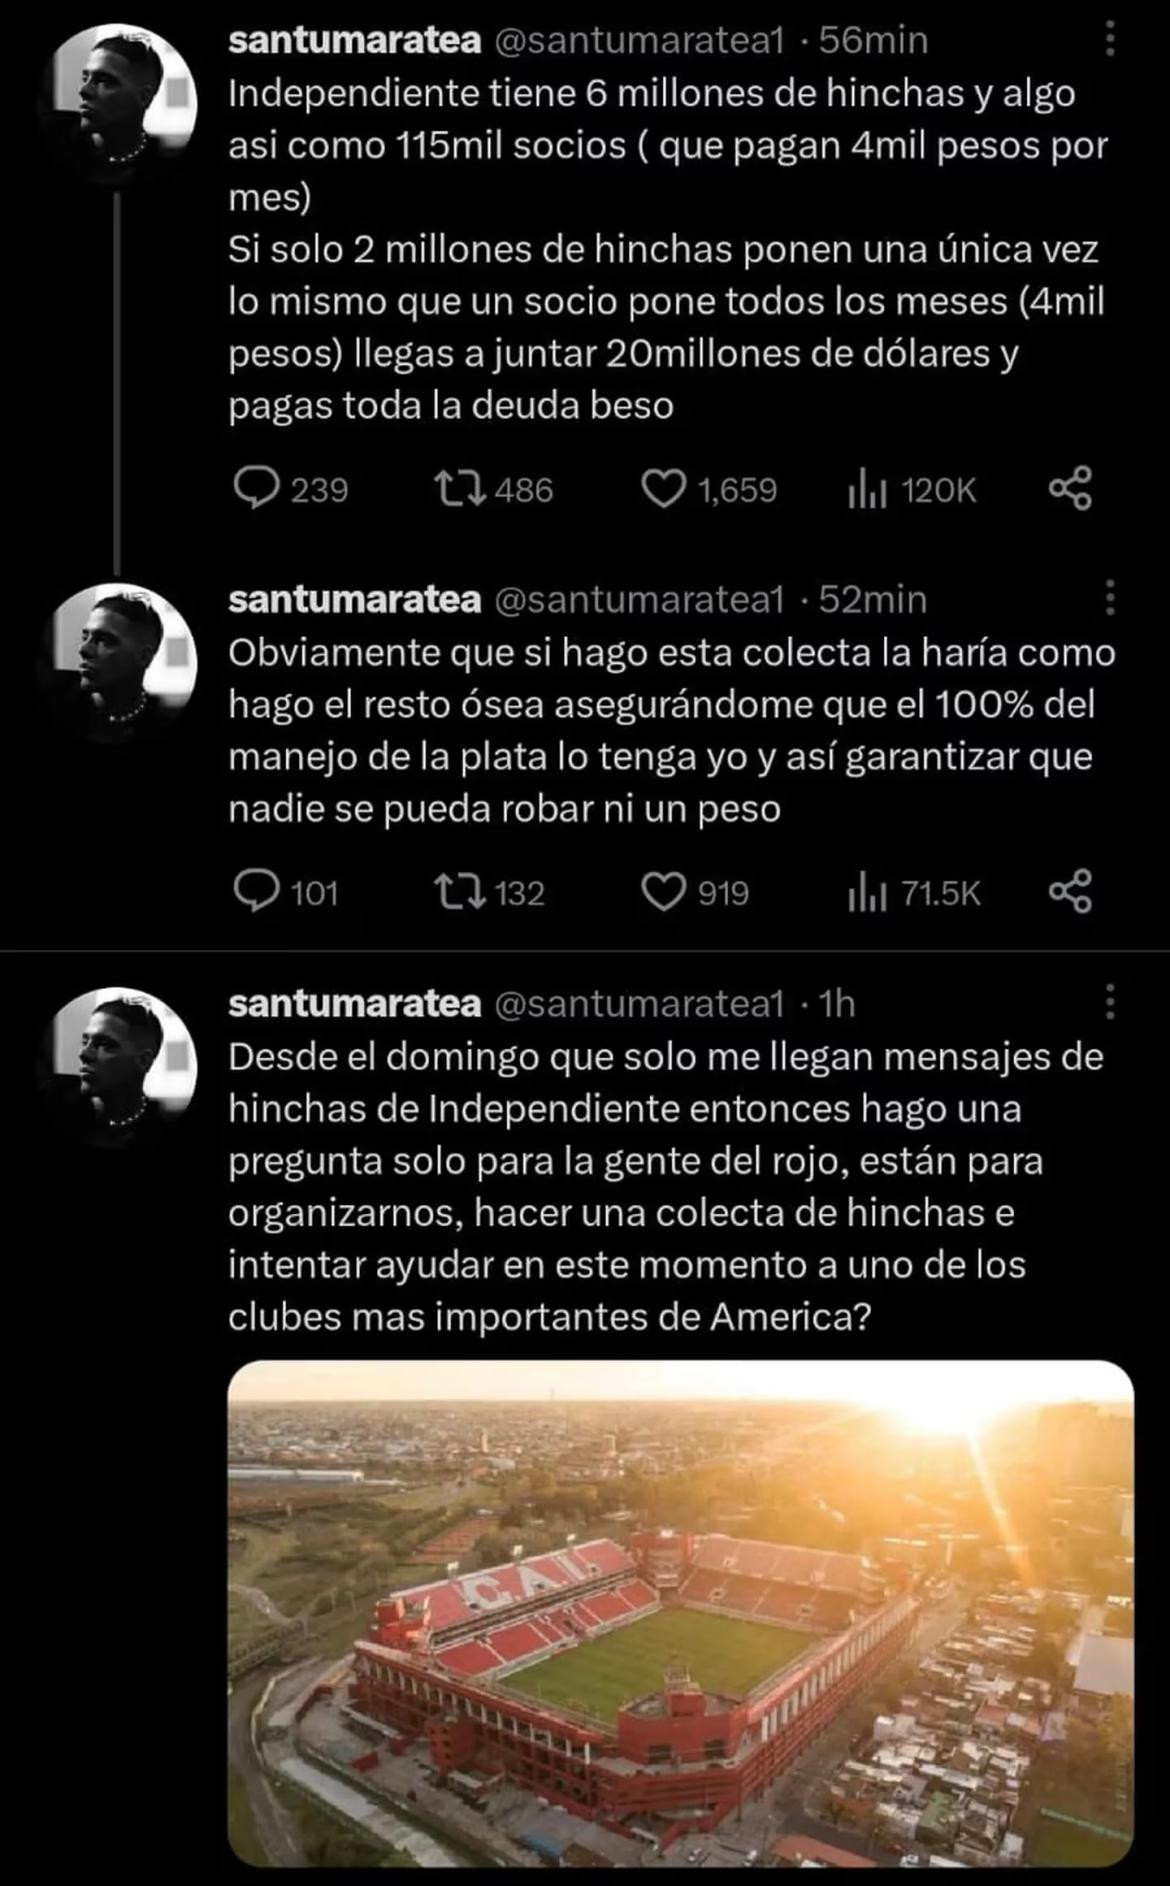 Santi Maratea propuso hacer una colecta por Independiente.